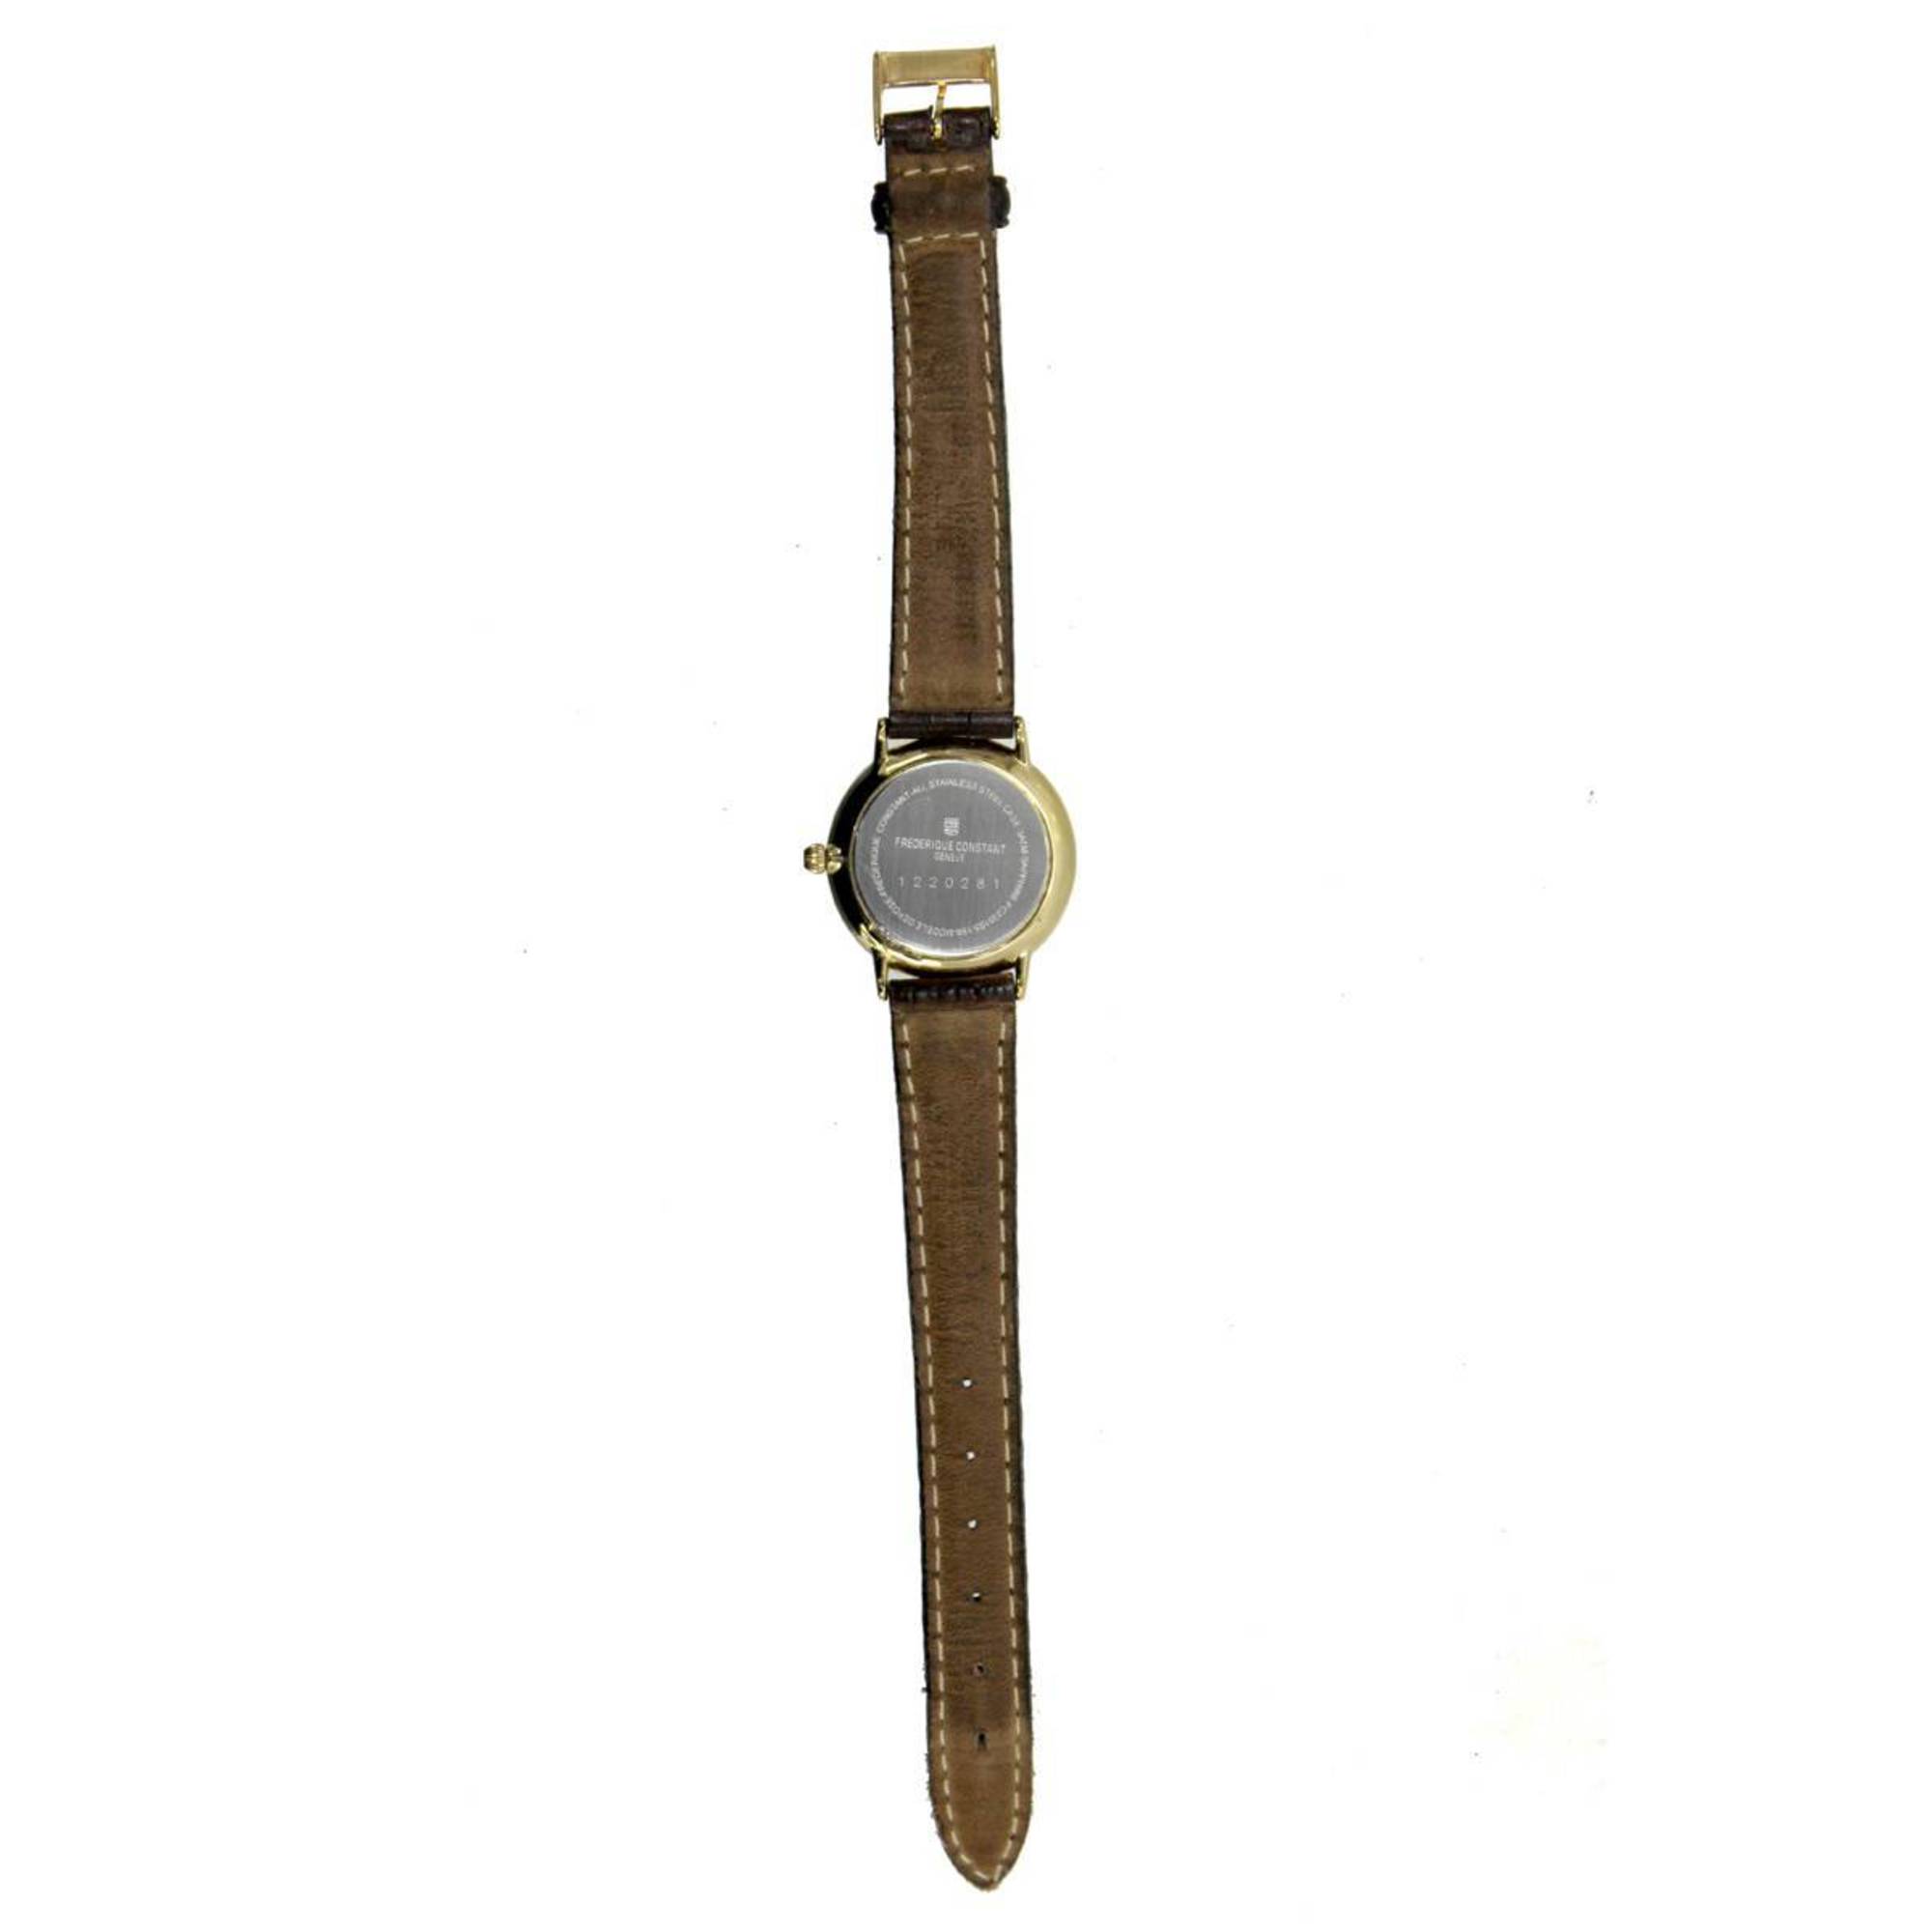 FREDERIQUE CONSTANT Frederique constant quartz watch FC2351S5 1S6 SS, YG, brown